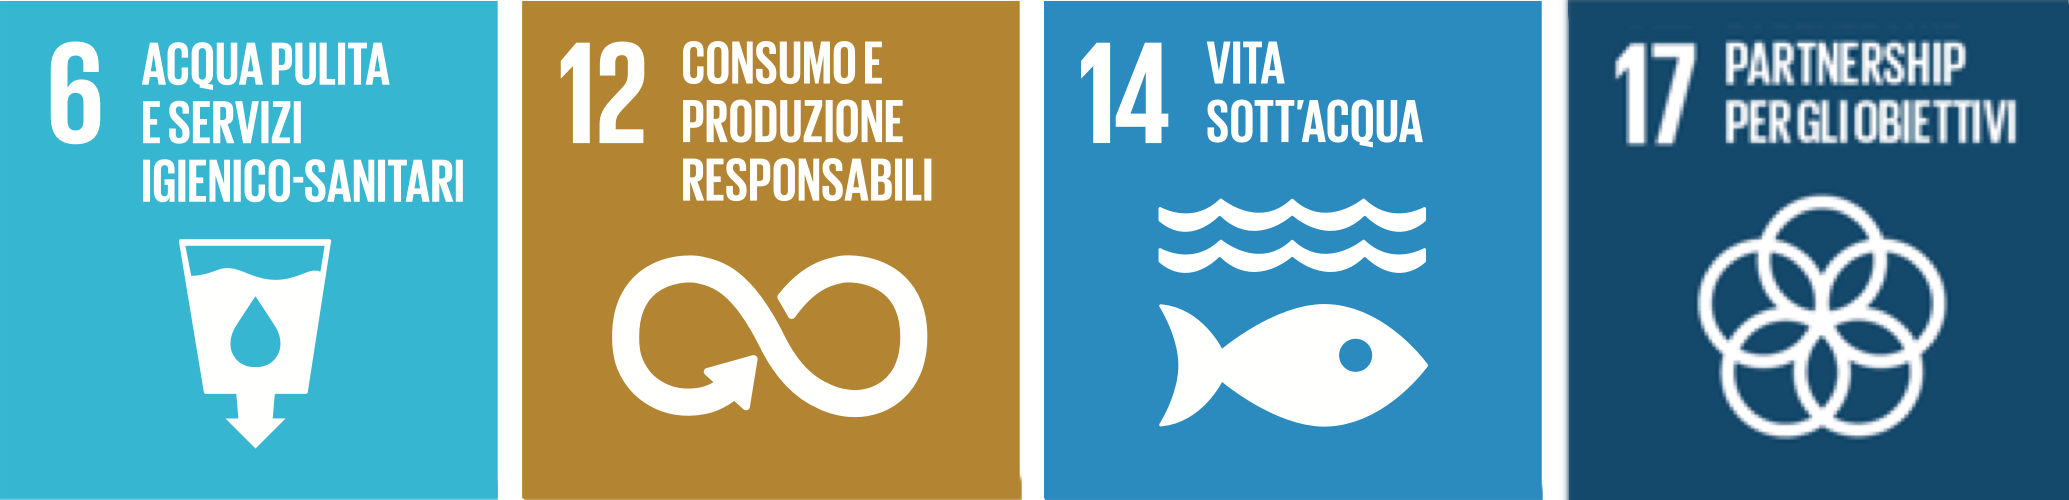 Rappresentazione degli obiettivi per lo Sviluppo Sostenibile dell'Agenda 2030: 6. Acqua pulita e servizi igienico-sanitario, 12. Consumo e produzione responsabili, 14. Vita sott'acqua, 17. partnership per gli obiettivi